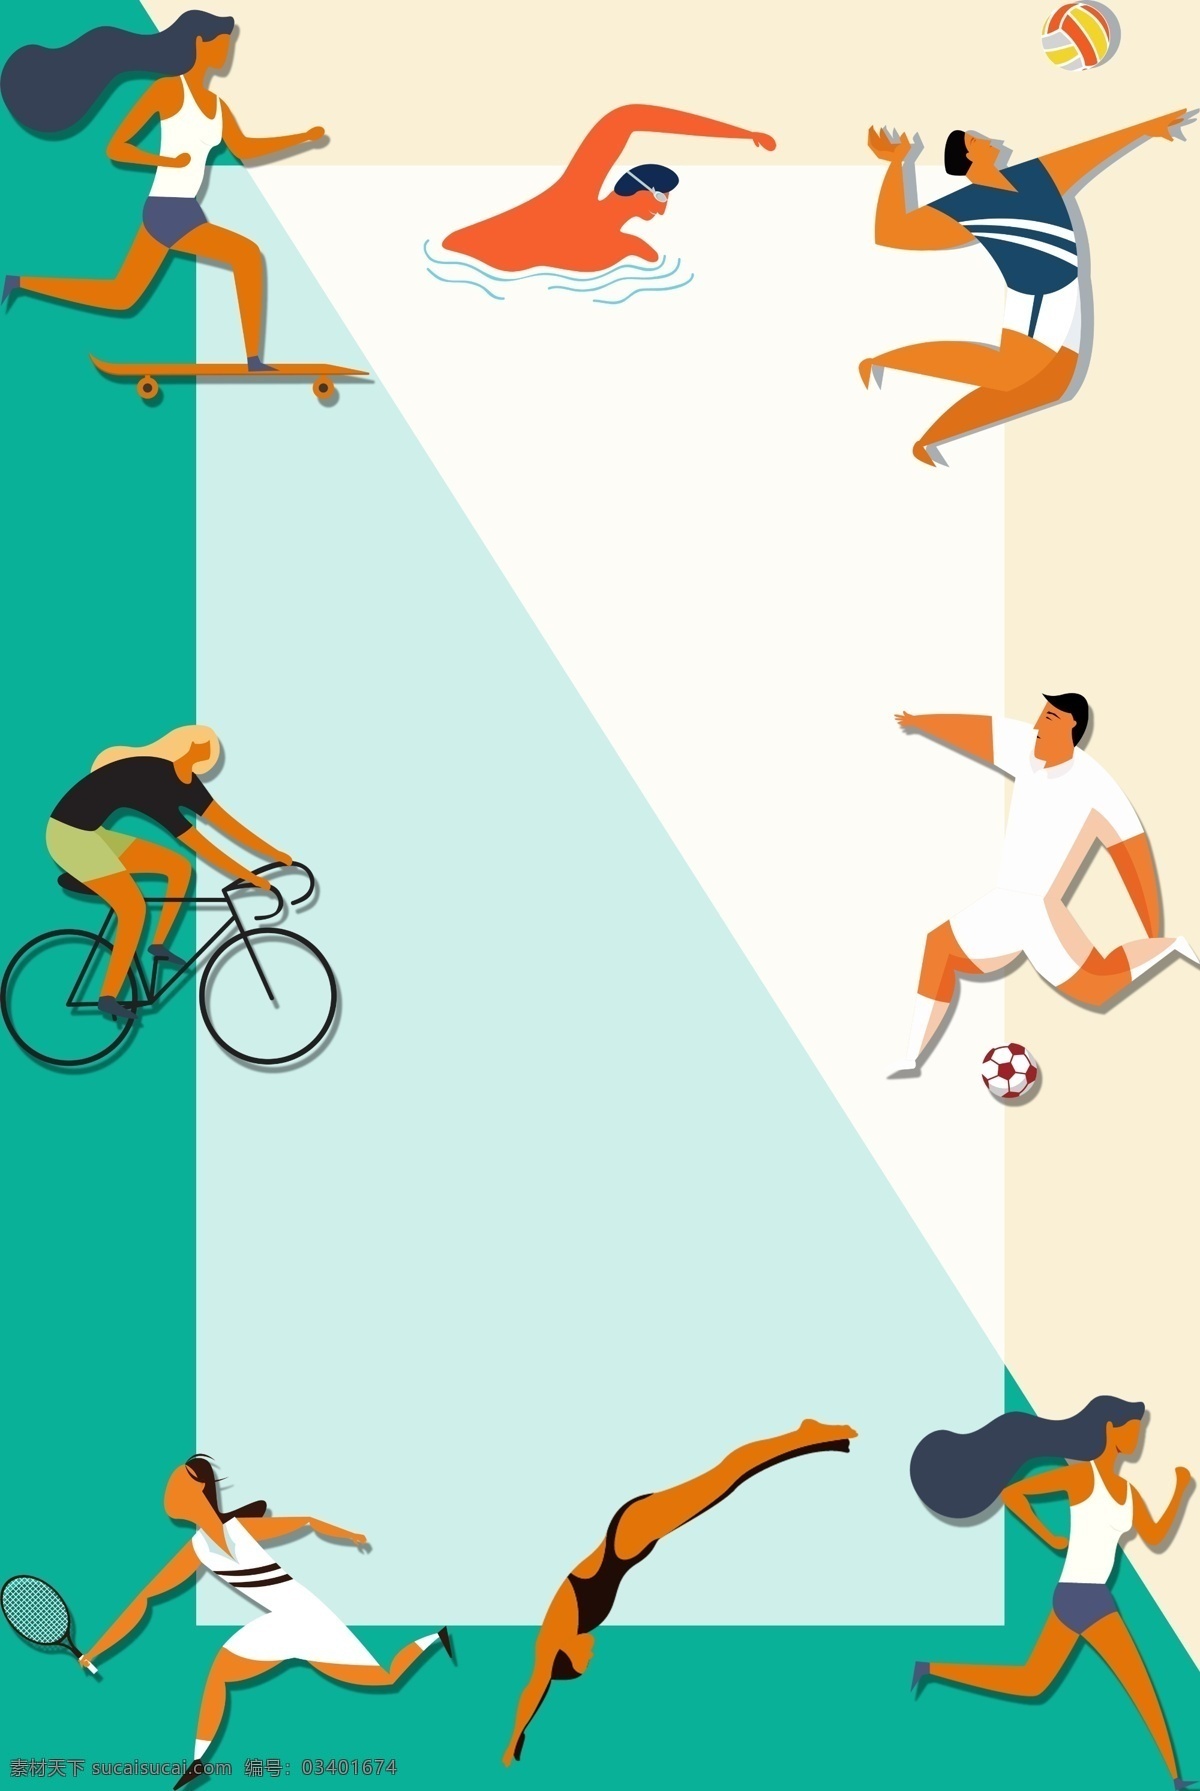 运动会 体育 项目 扁平 风格 矢量 宣传海报 背景 滑板 排球 游泳 自行车 跑步 锻炼 跳水 网球 足球 边框 宣传 海报